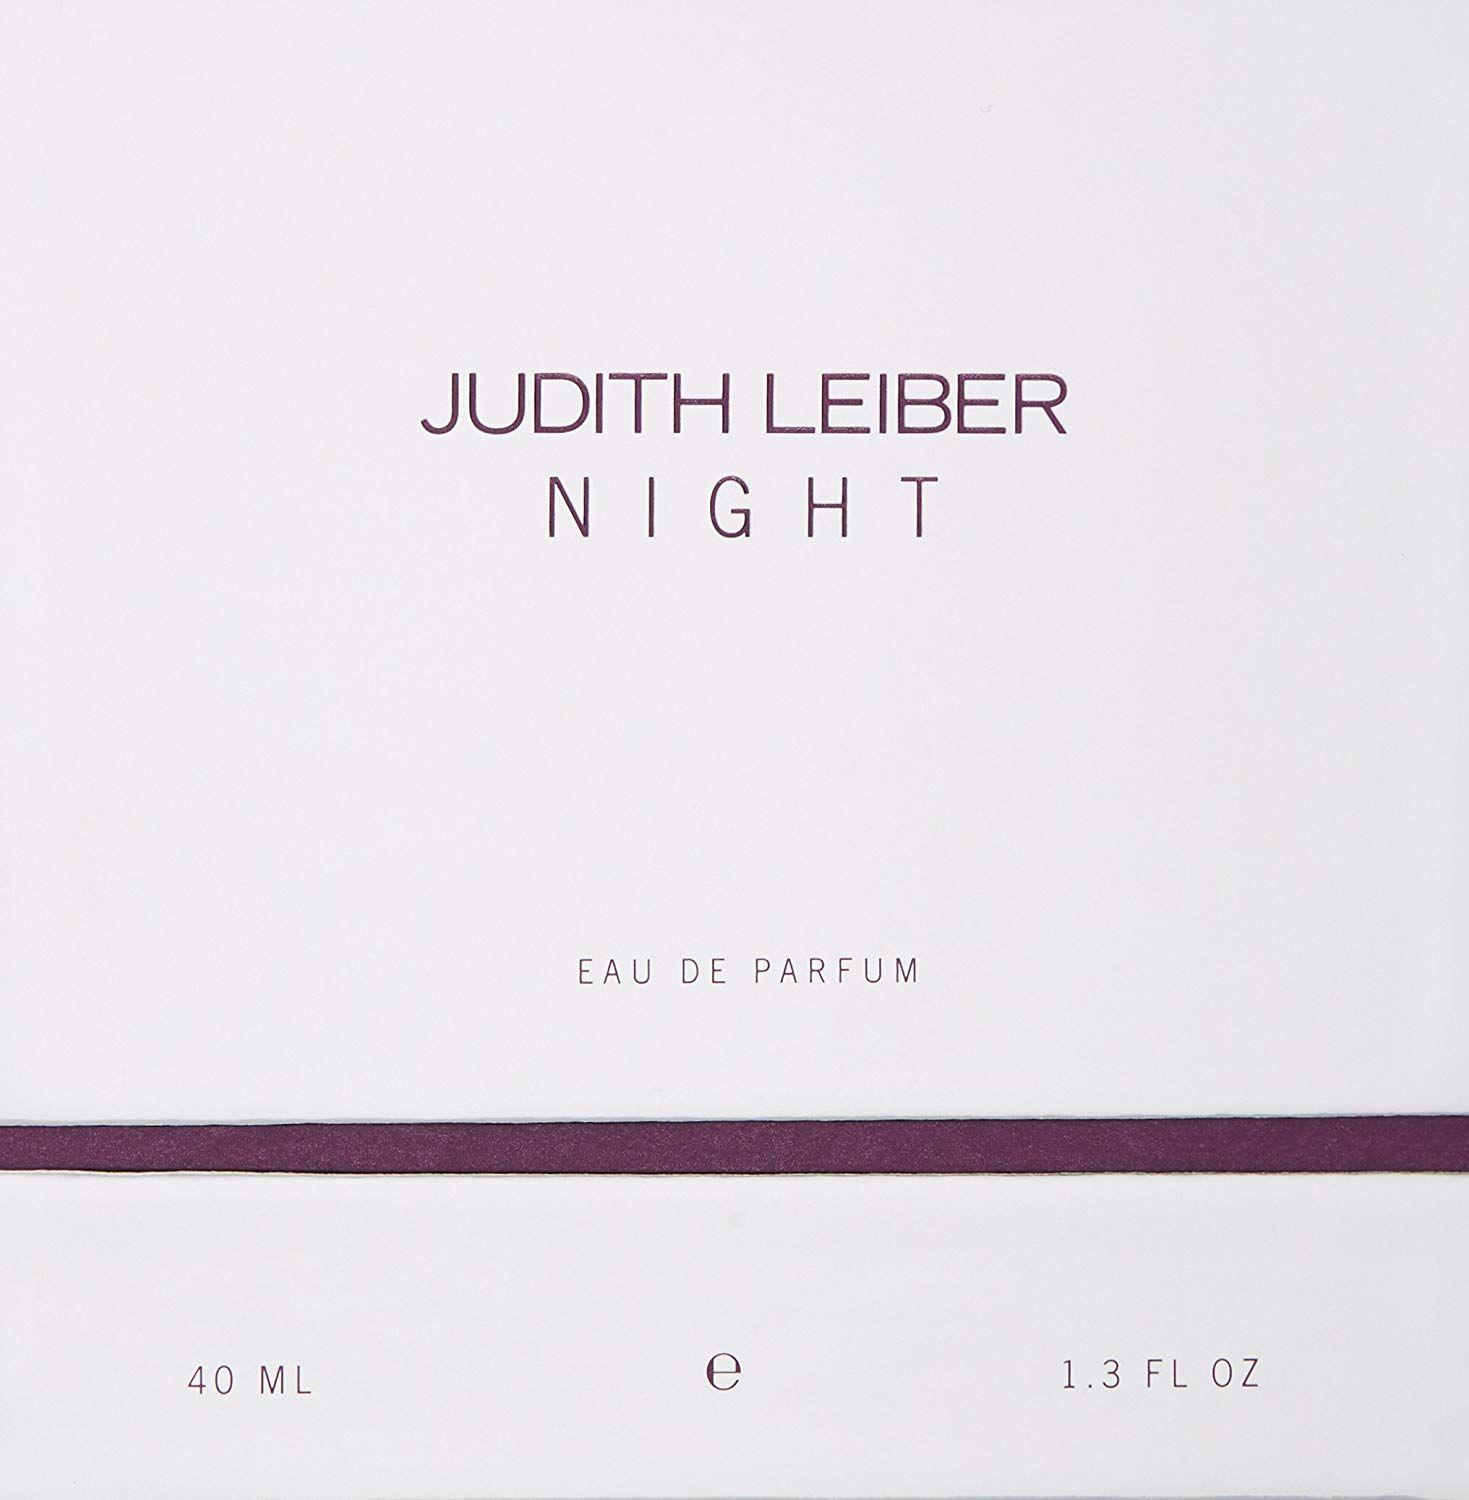 Judith Leiber Logo - Amazon.com: JUDITH LEIBER Night Eau-de-Parfum Spray, 1.3 fl. oz ...